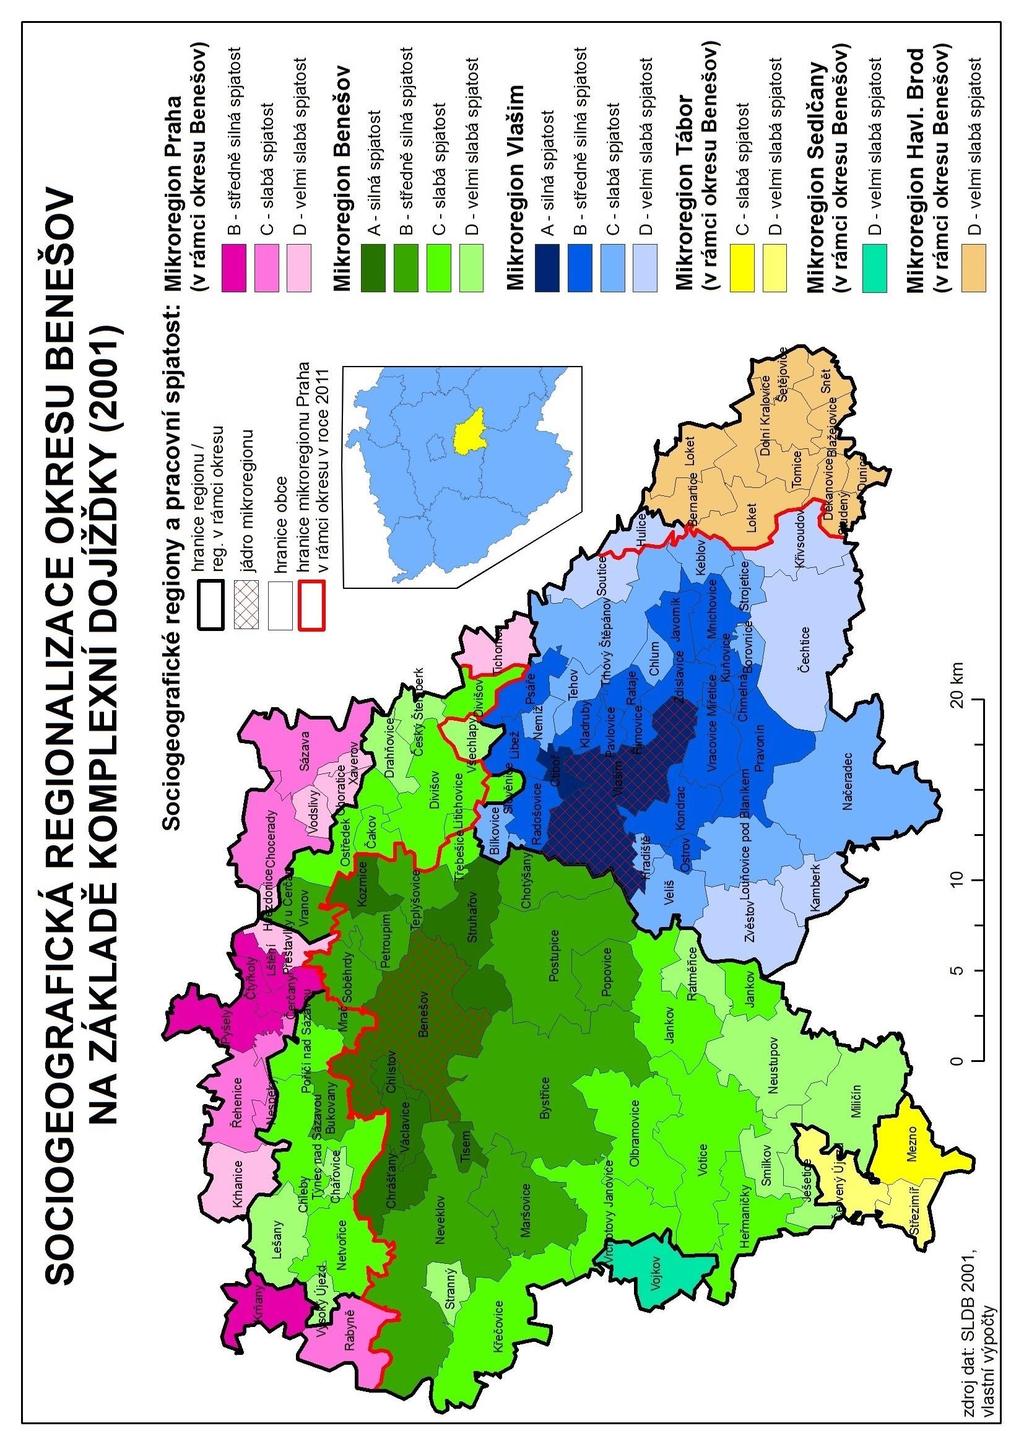 Obr. 9: Sociogeografická regionalizace okresu Benešov na